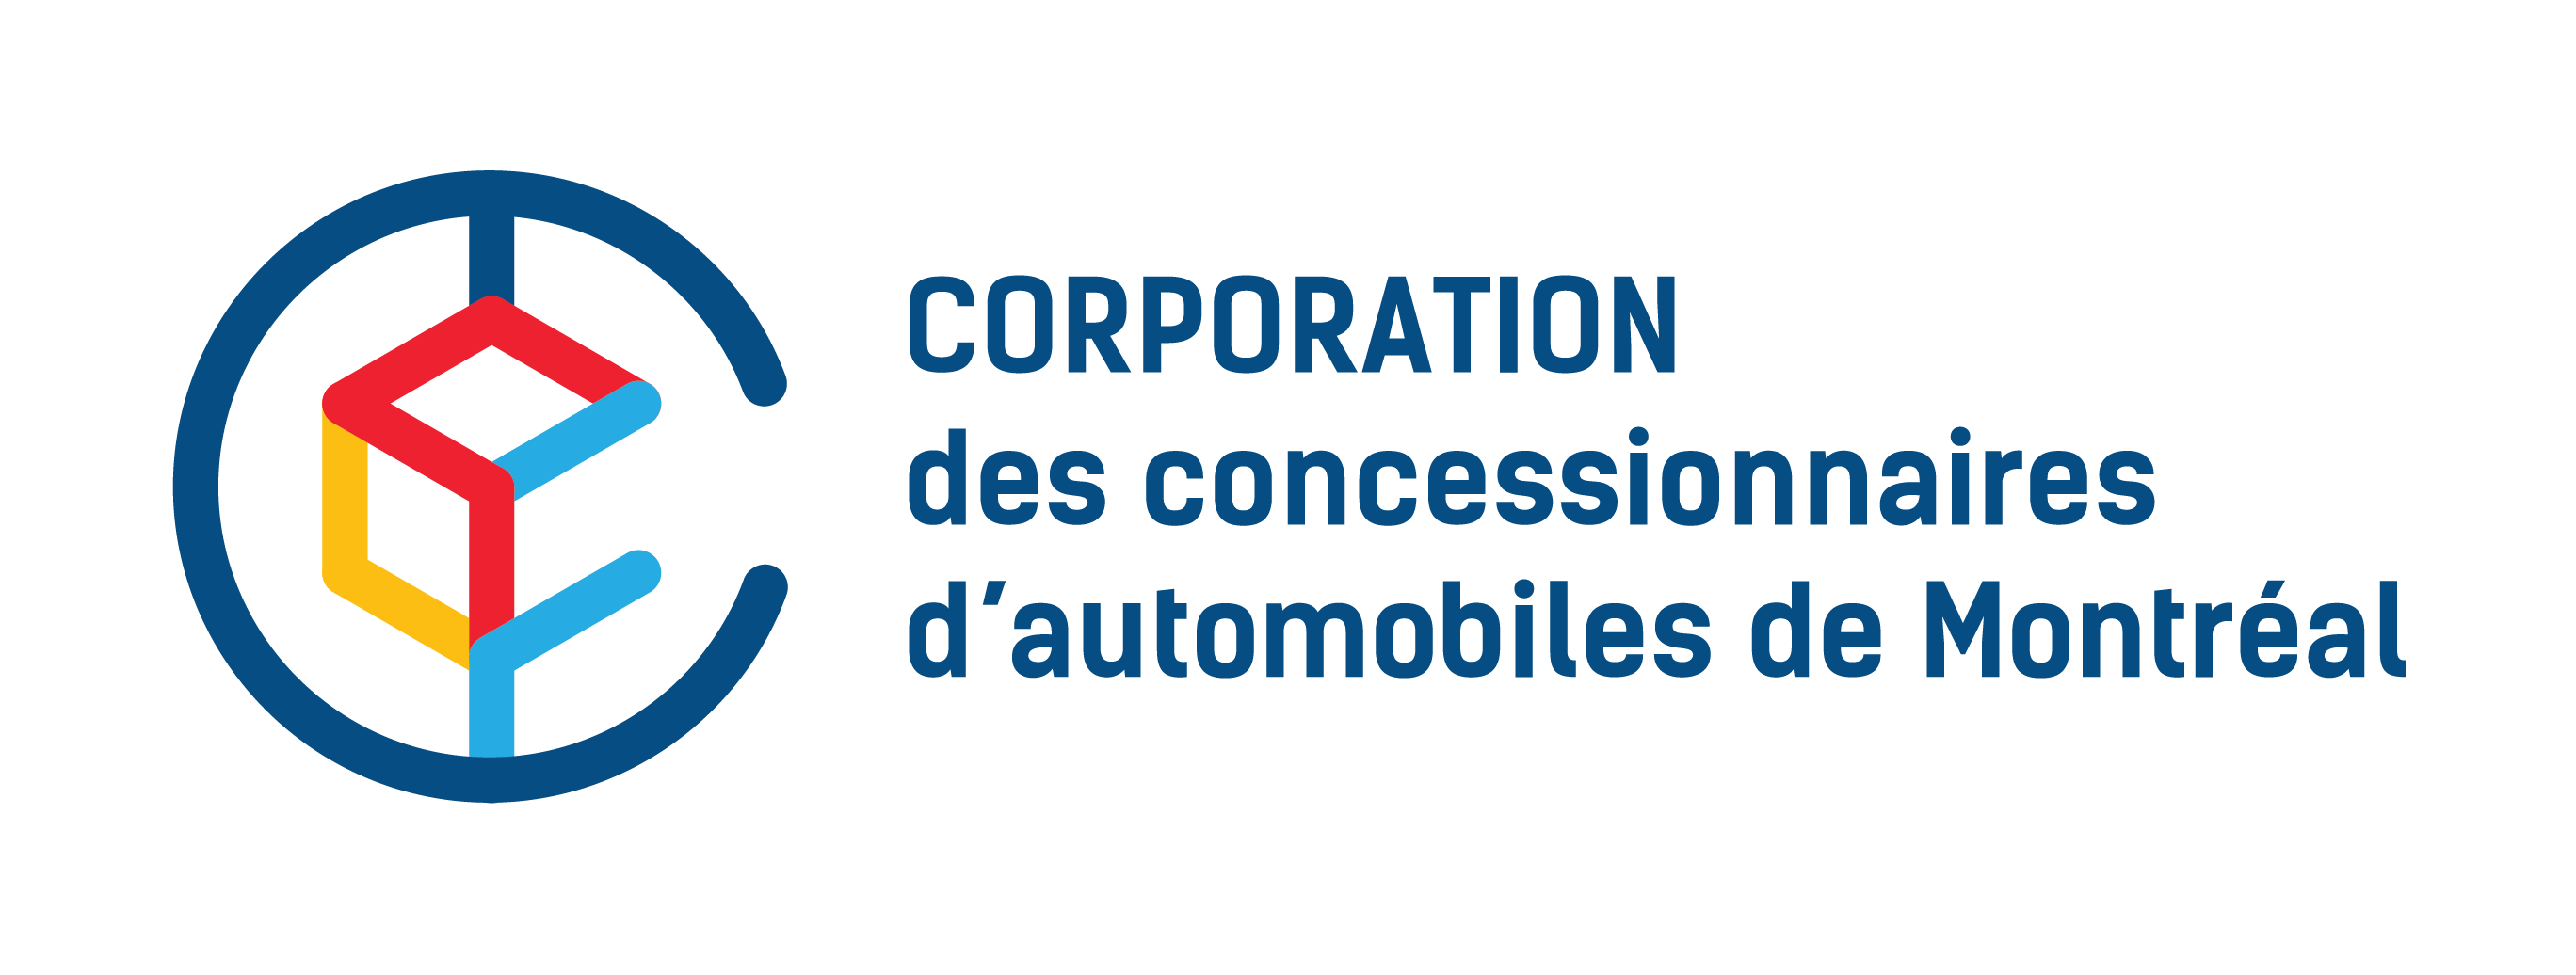 Corporation des concessionnaires d’automobiles de Montréal (CCAM)